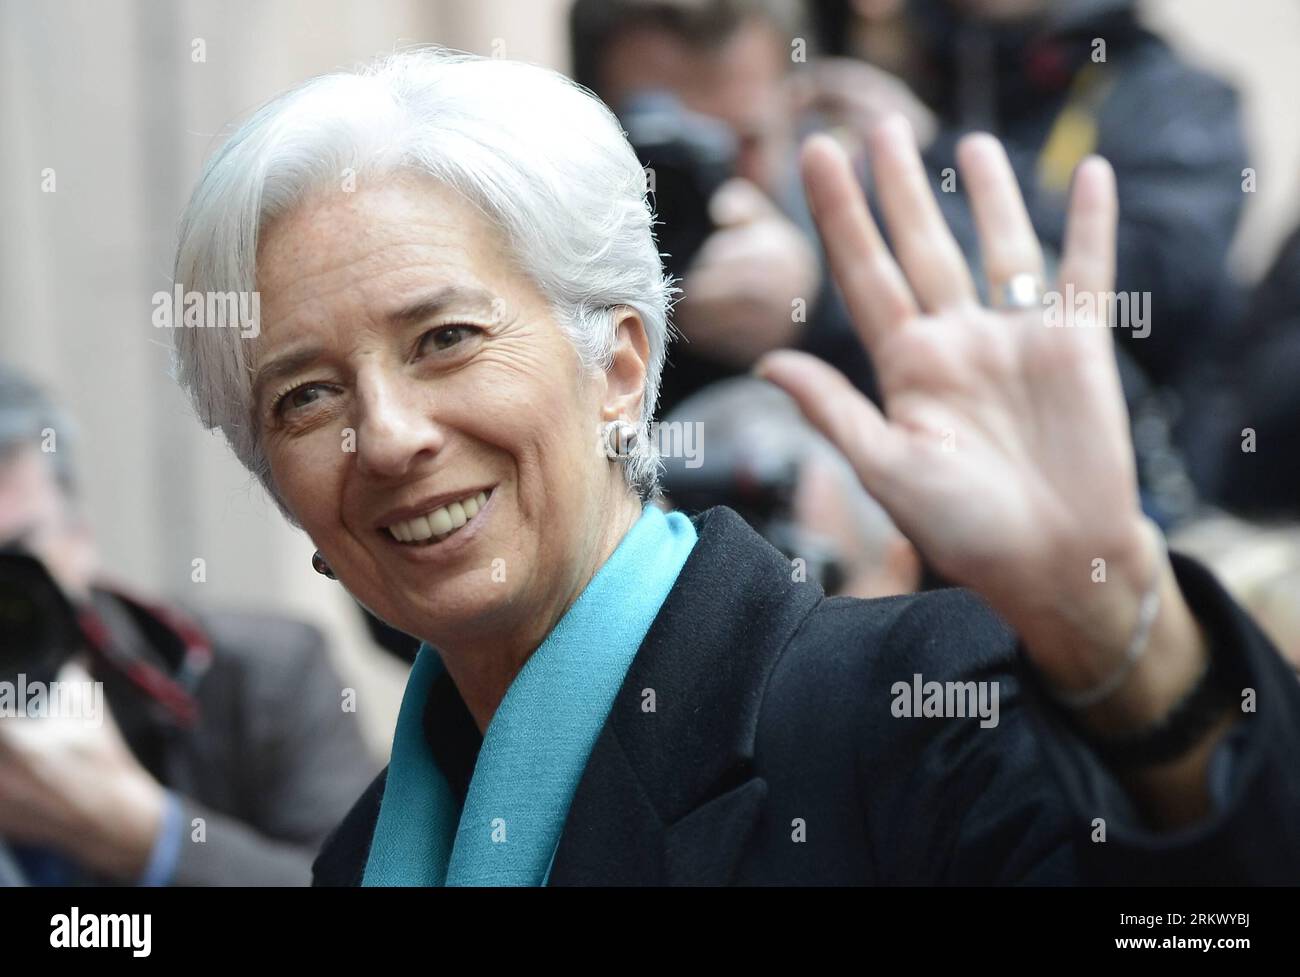 (121126) -- BRUXELLES, 26 novembre 2012 (Xinhua)-- l'amministratore delegato del Fondo monetario internazionale (FMI) Christine Lagarde arriva per la riunione dei ministri delle finanze dell'Eurozona a Bruxelles, capitale del Belgio il 26 novembre 2012. I ministri delle finanze dell’Eurozona si sono incontrati lunedì per discutere la prossima rata del denaro di salvataggio per la Grecia carica di debito. (Xinhua/Wu Wei) BELGIO-UE-ZONA EURO-RIUNIONE PUBLICATIONxNOTxINxCHN Foto Stock